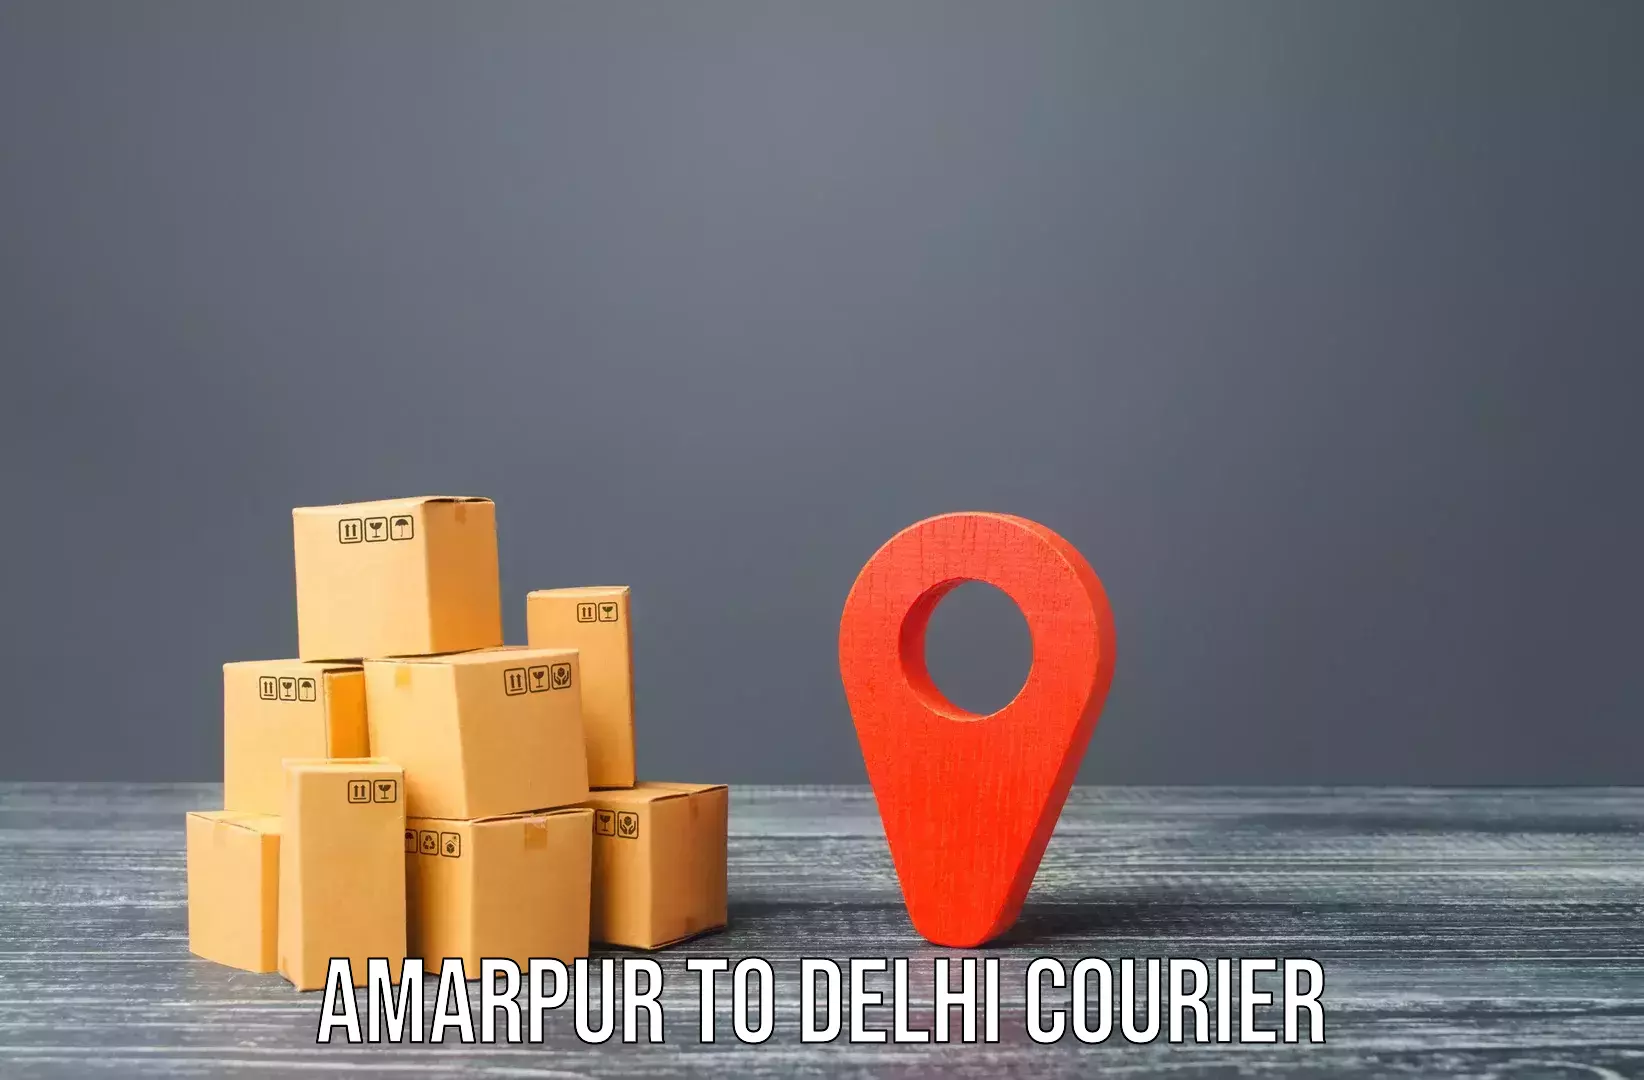 Personalized moving service in Amarpur to Kalkaji